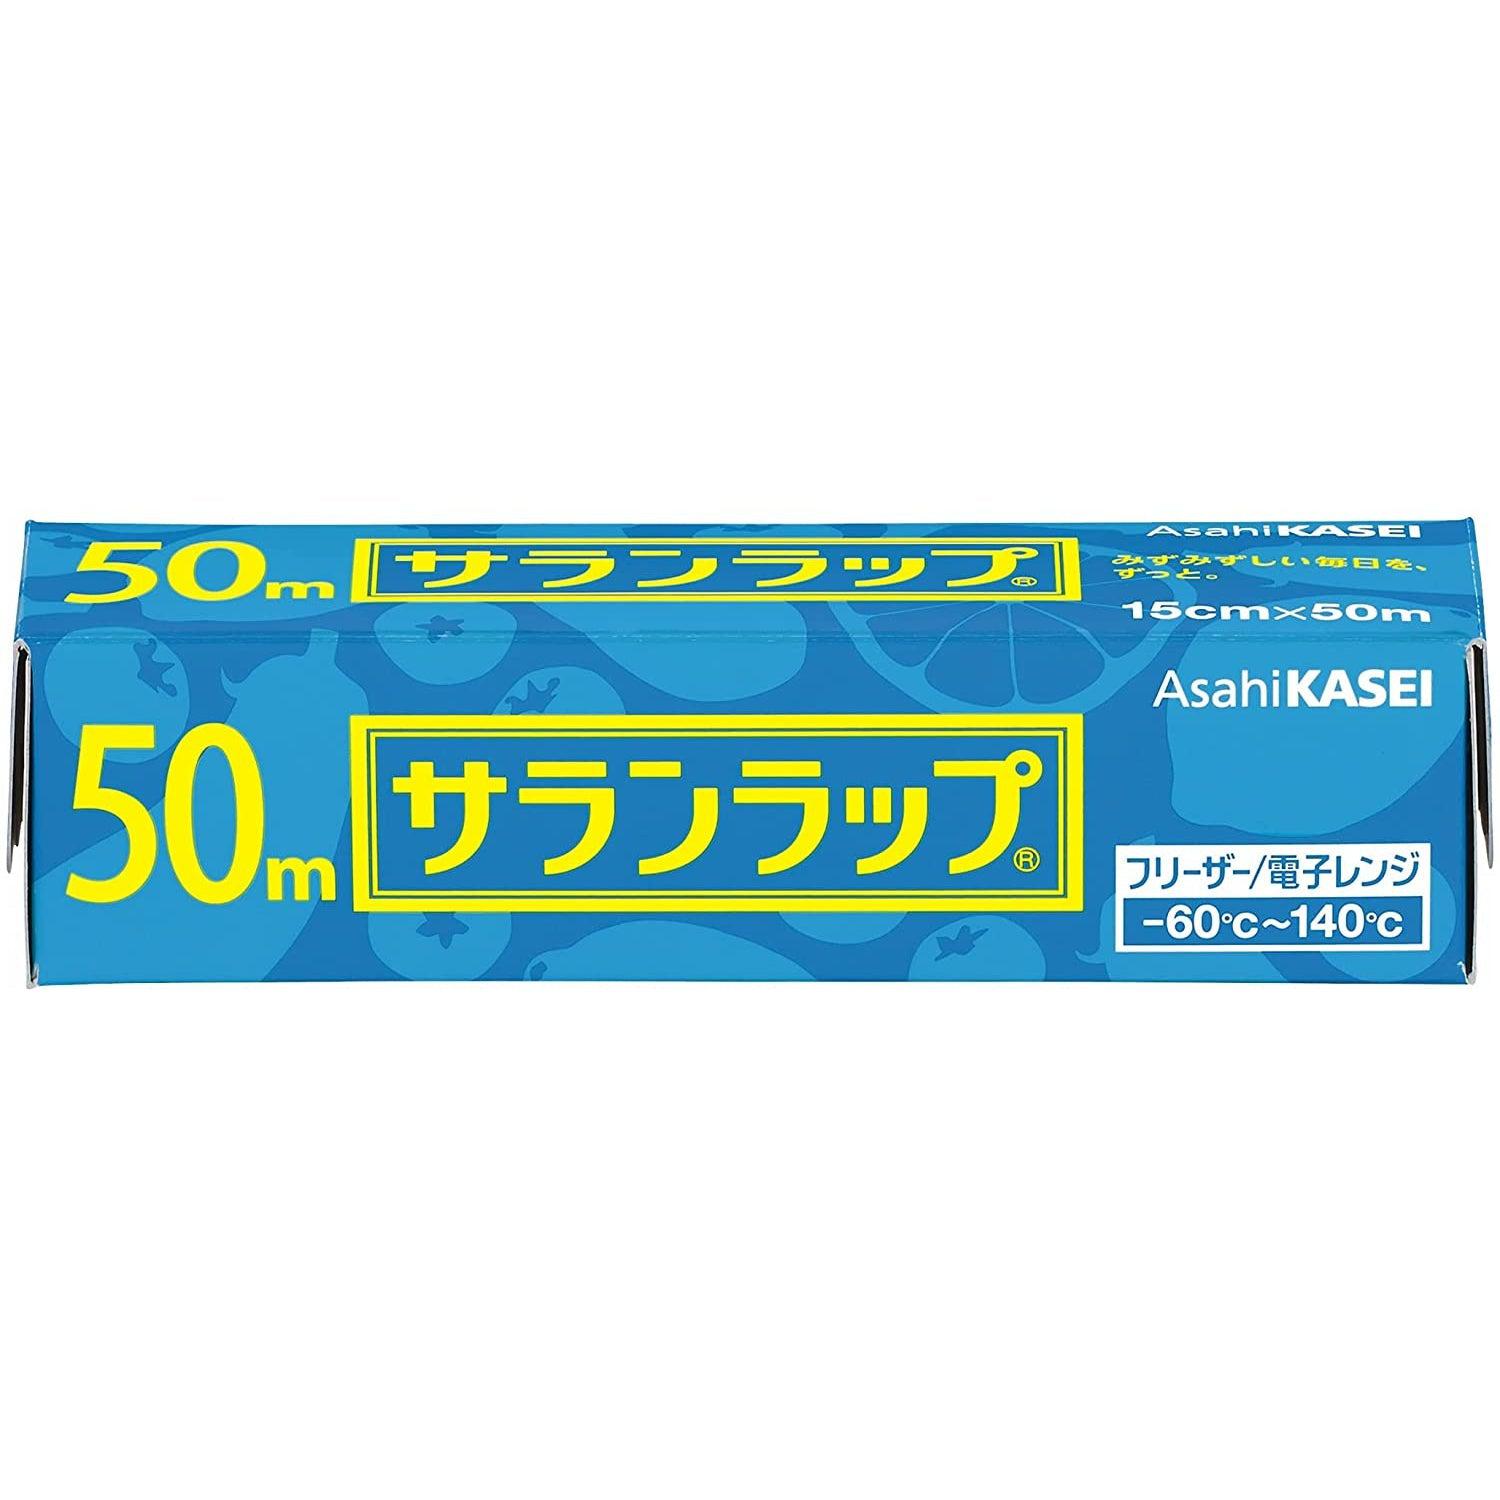 Asahi Kasei Saran Wrap Cling Food Storage Film 50m - Made in Japan